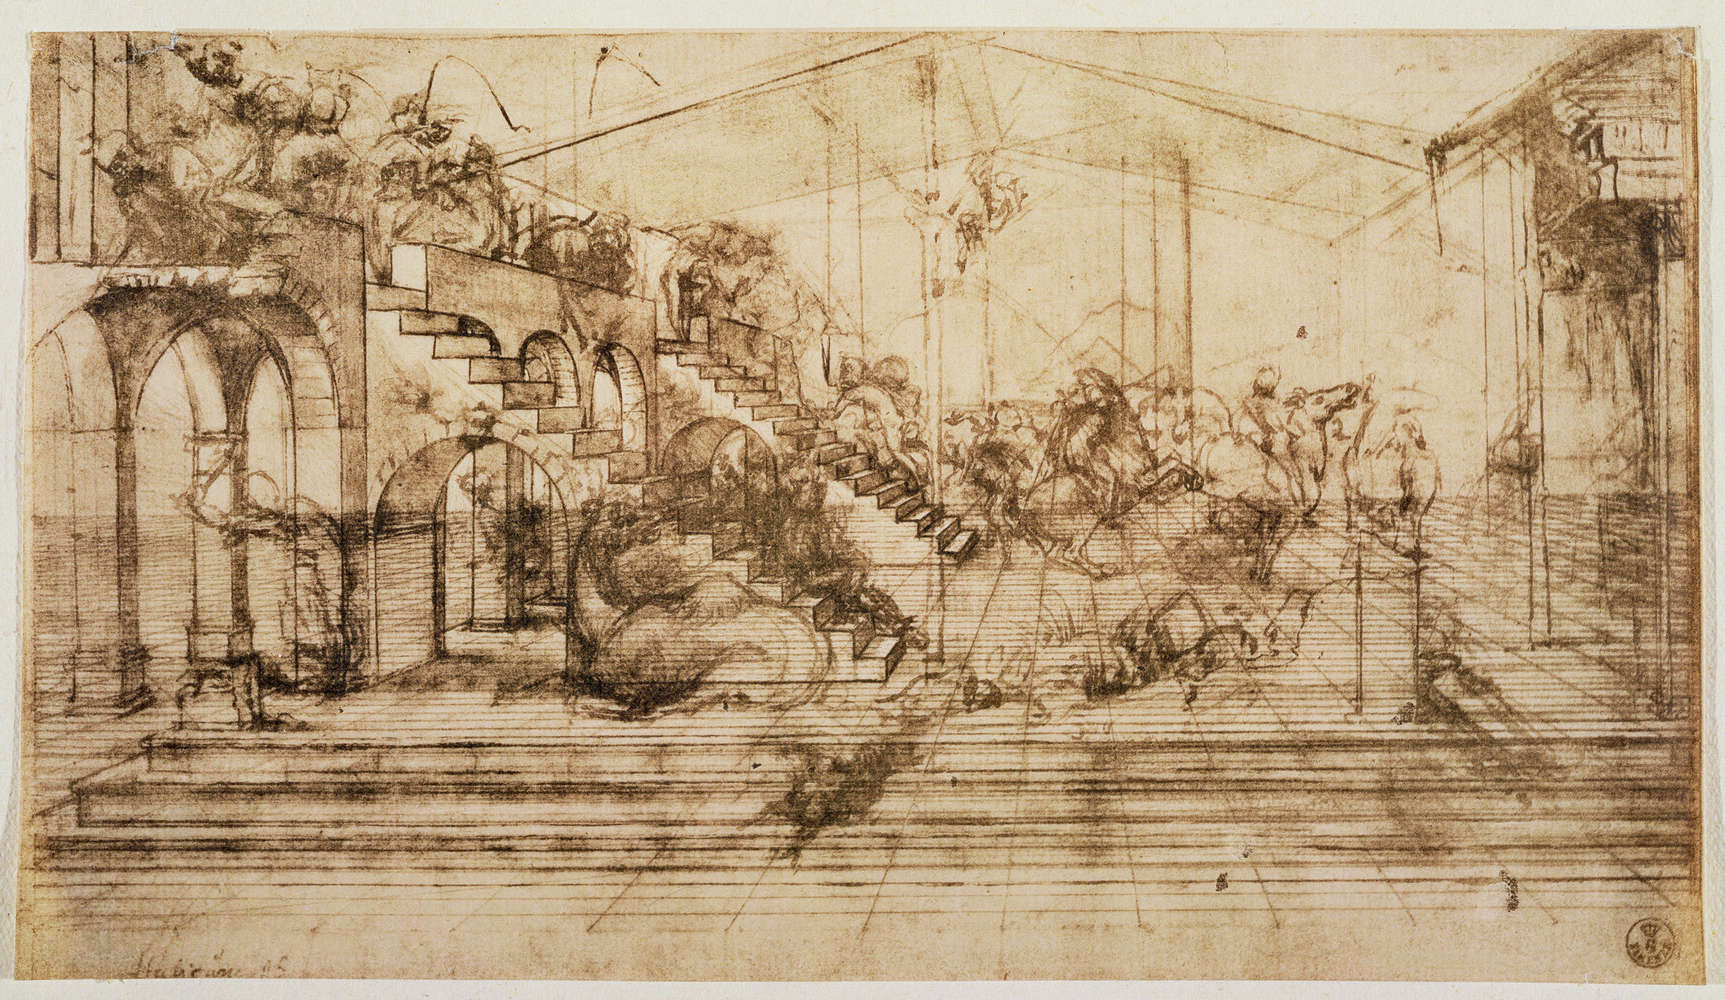             Muurschildering "Perspectiefstudie voor de achtergrond van de Aanbidding der Koningen" door Leonardo da Vinci
        